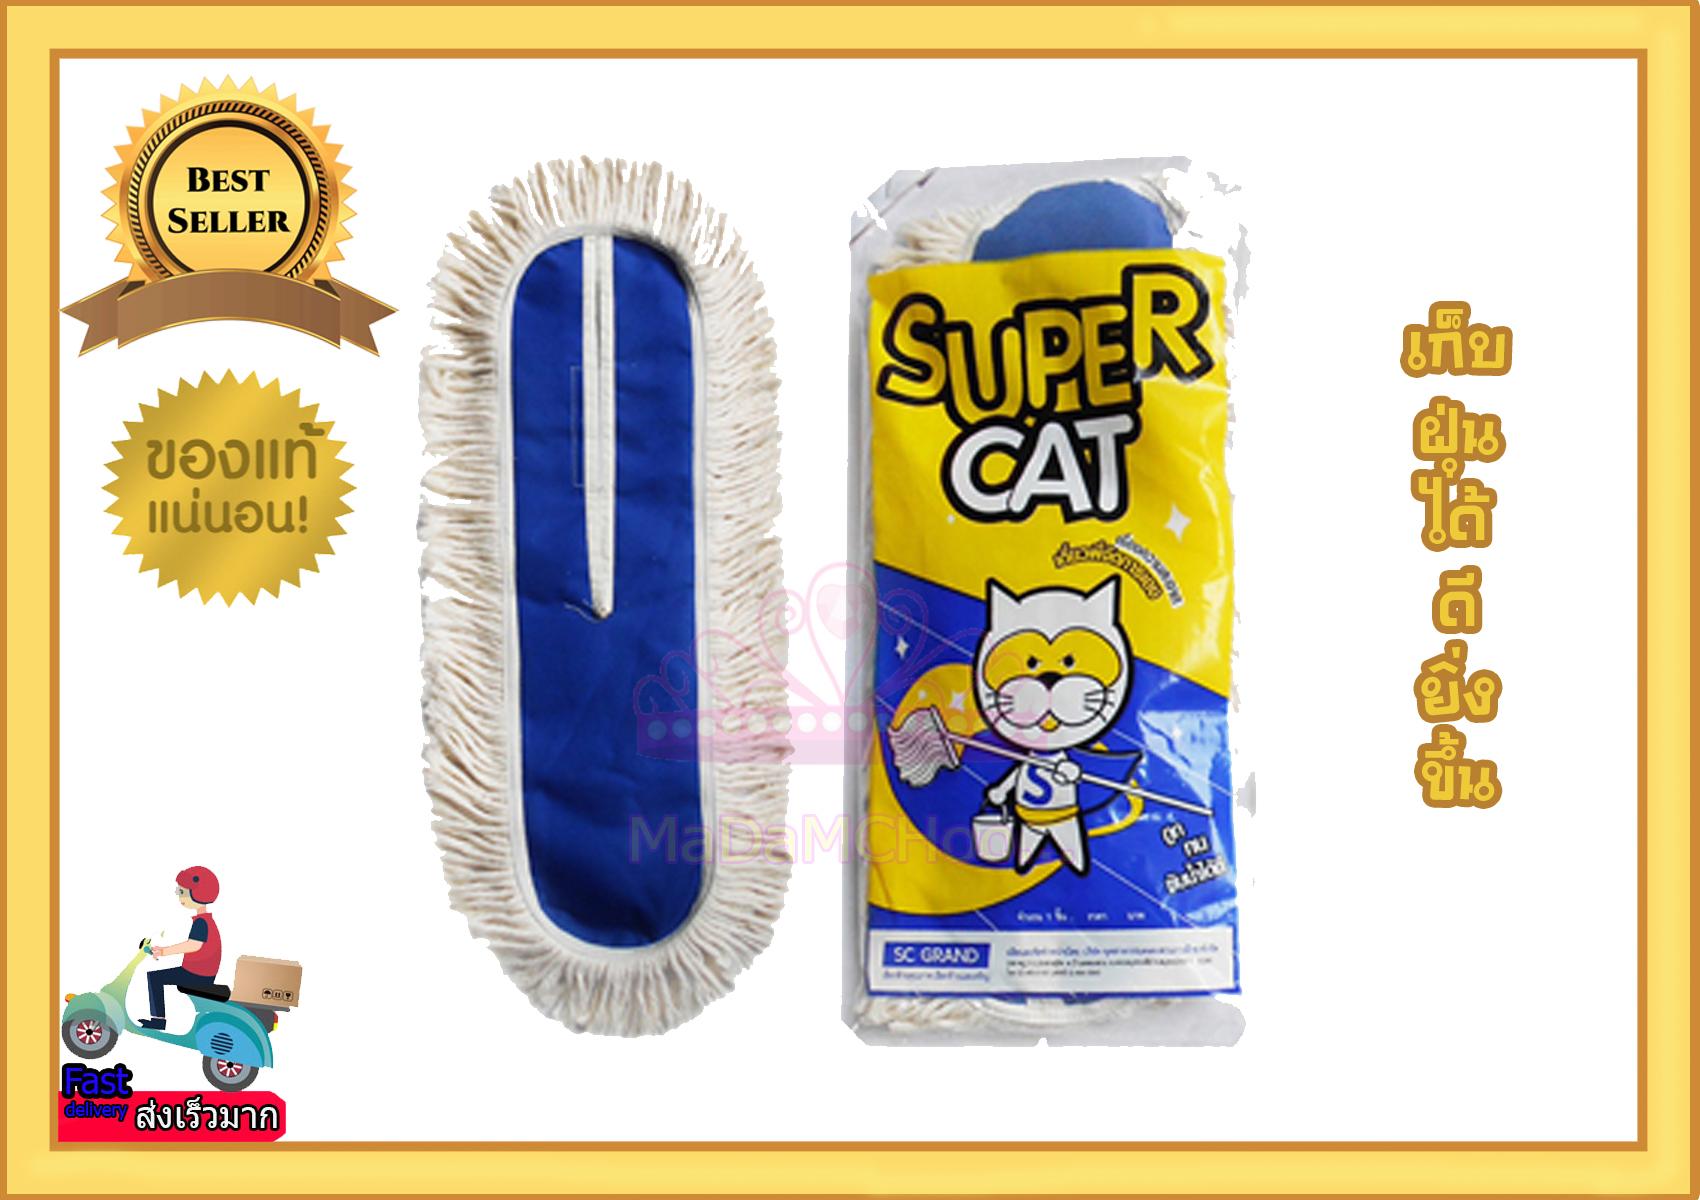 ผ้าม็อบดันฝุ่น  Super Cat #  อะไหล่ม็อบดันฝุ่น   ขนาด  24  นิ้ว  น้ำหนัก  440  กรัม   (สีขาว)  เนื้อผ้า Cotton คุณภาพดีเกินราคา # ราคาส่ง